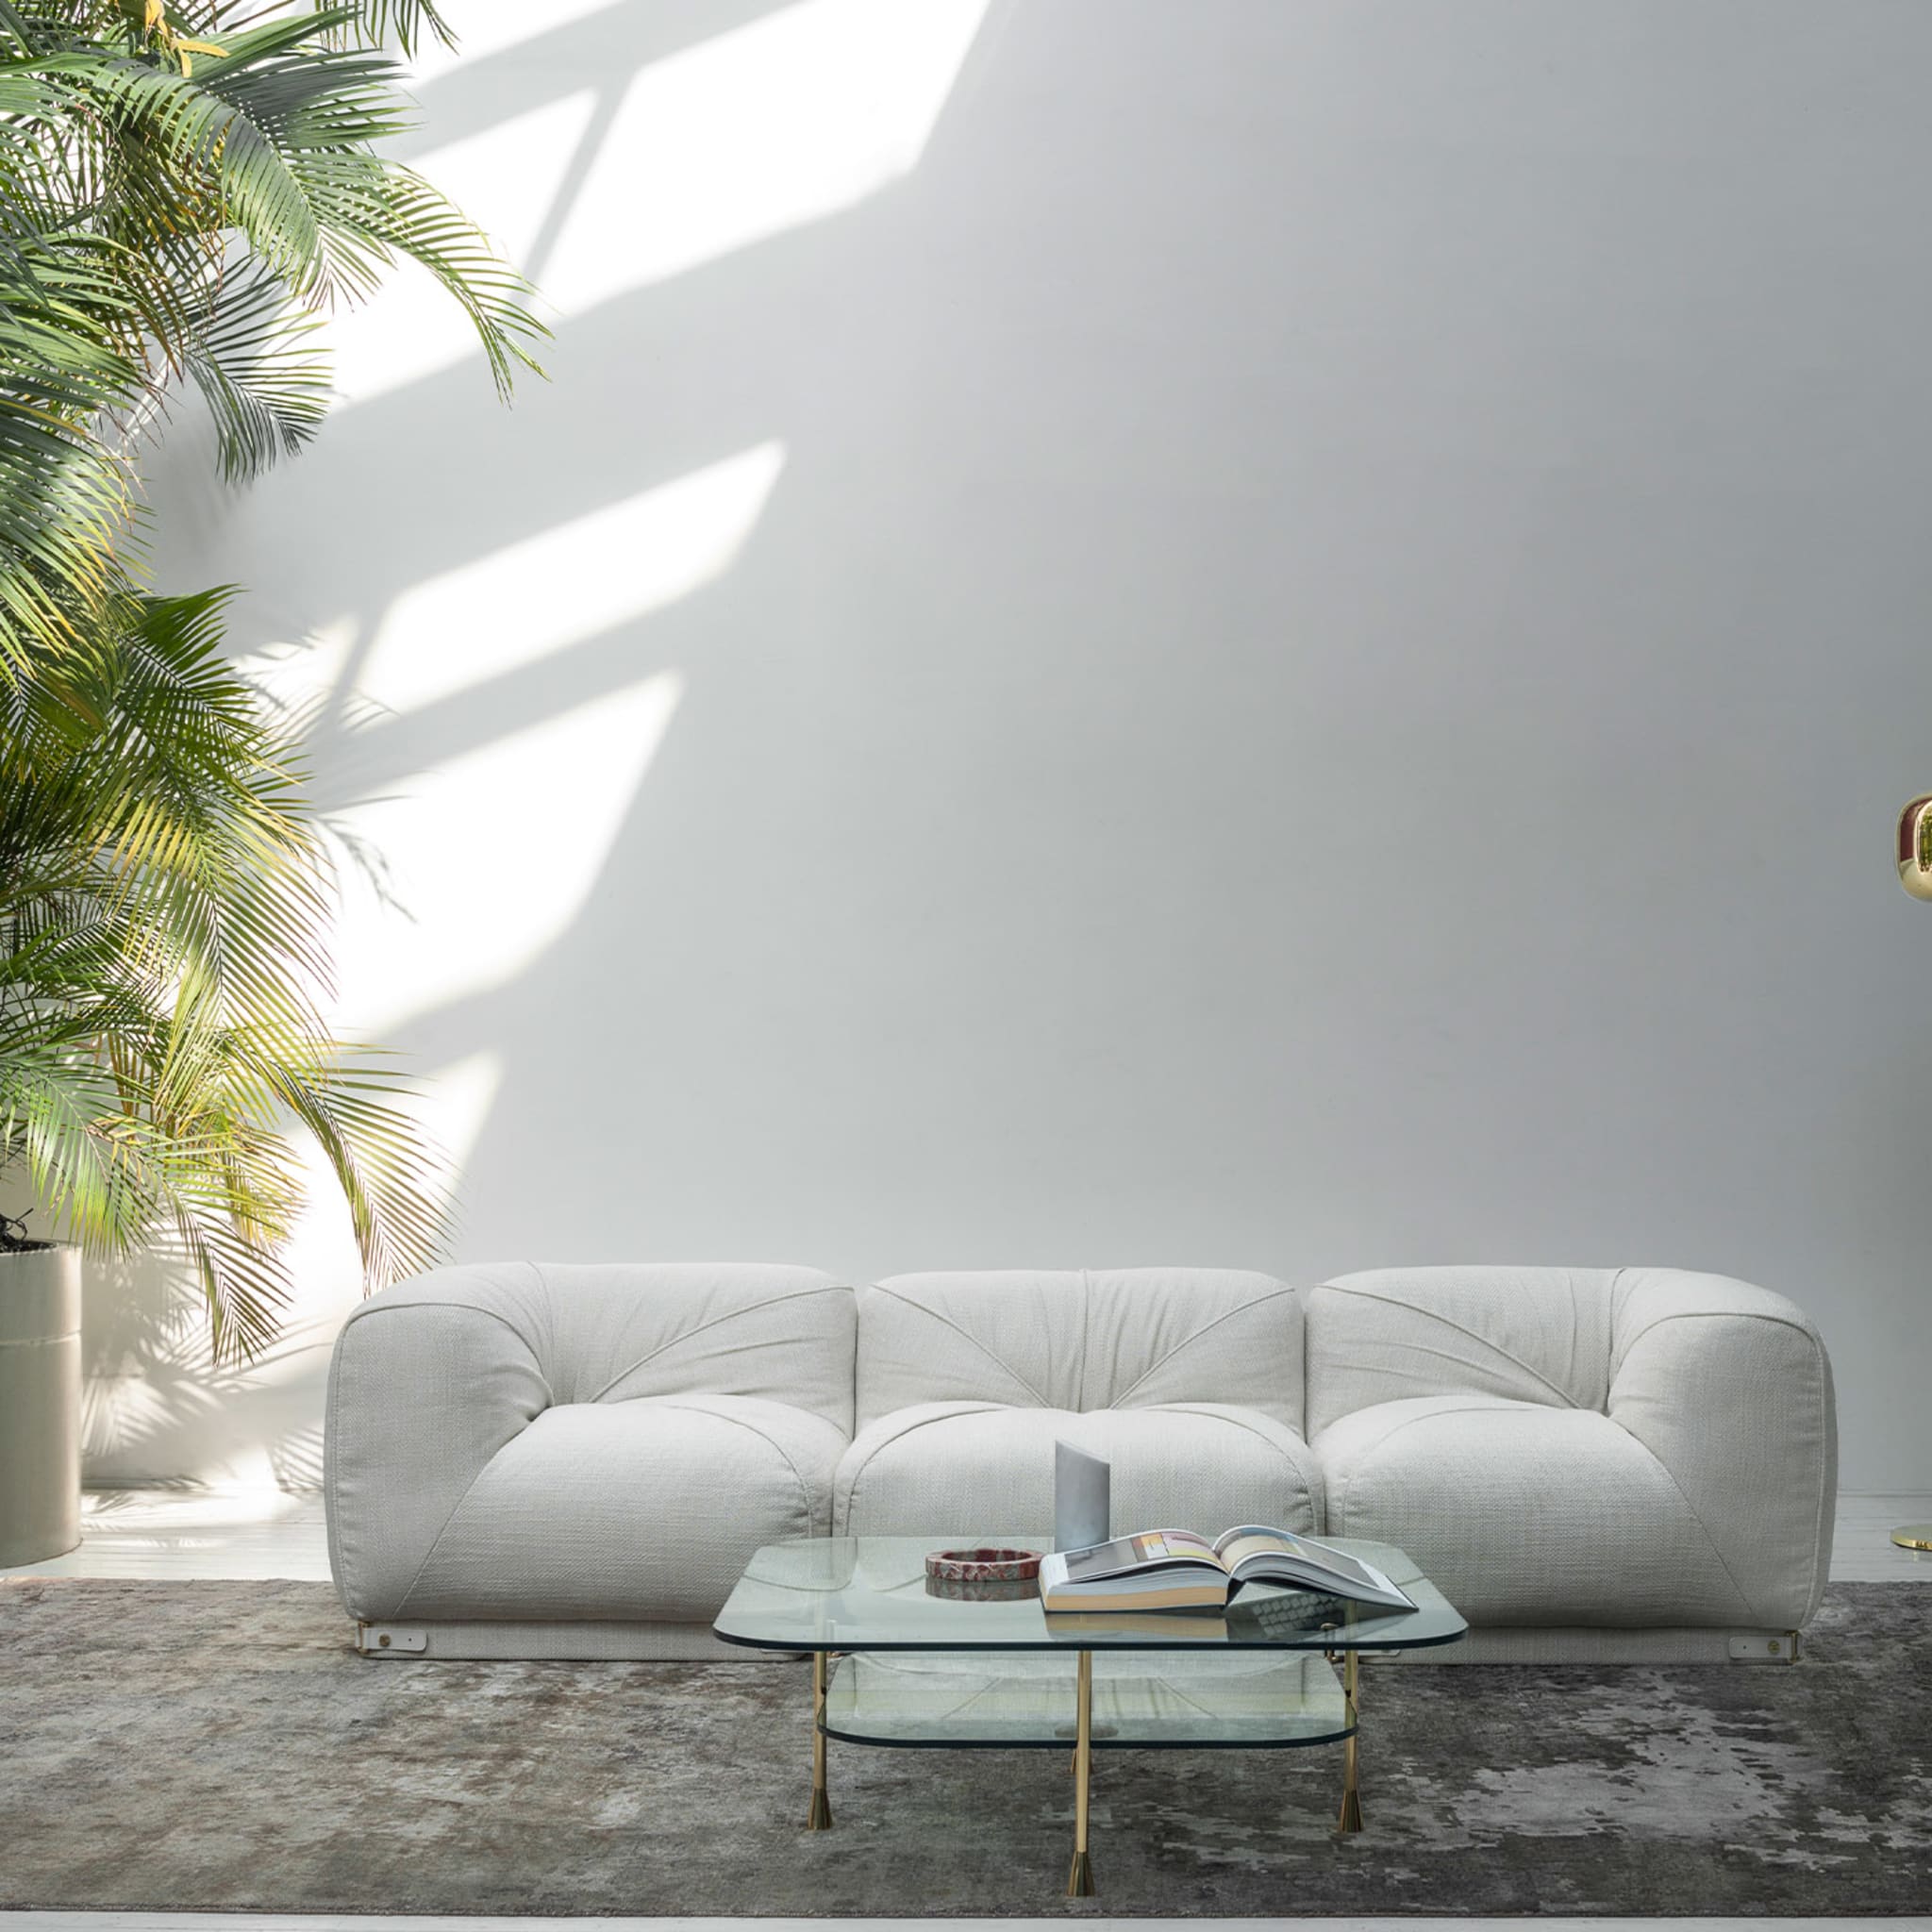 Leisure 3-sitzer weißes sofa by Lorenza Bozzoli - Alternative Ansicht 4